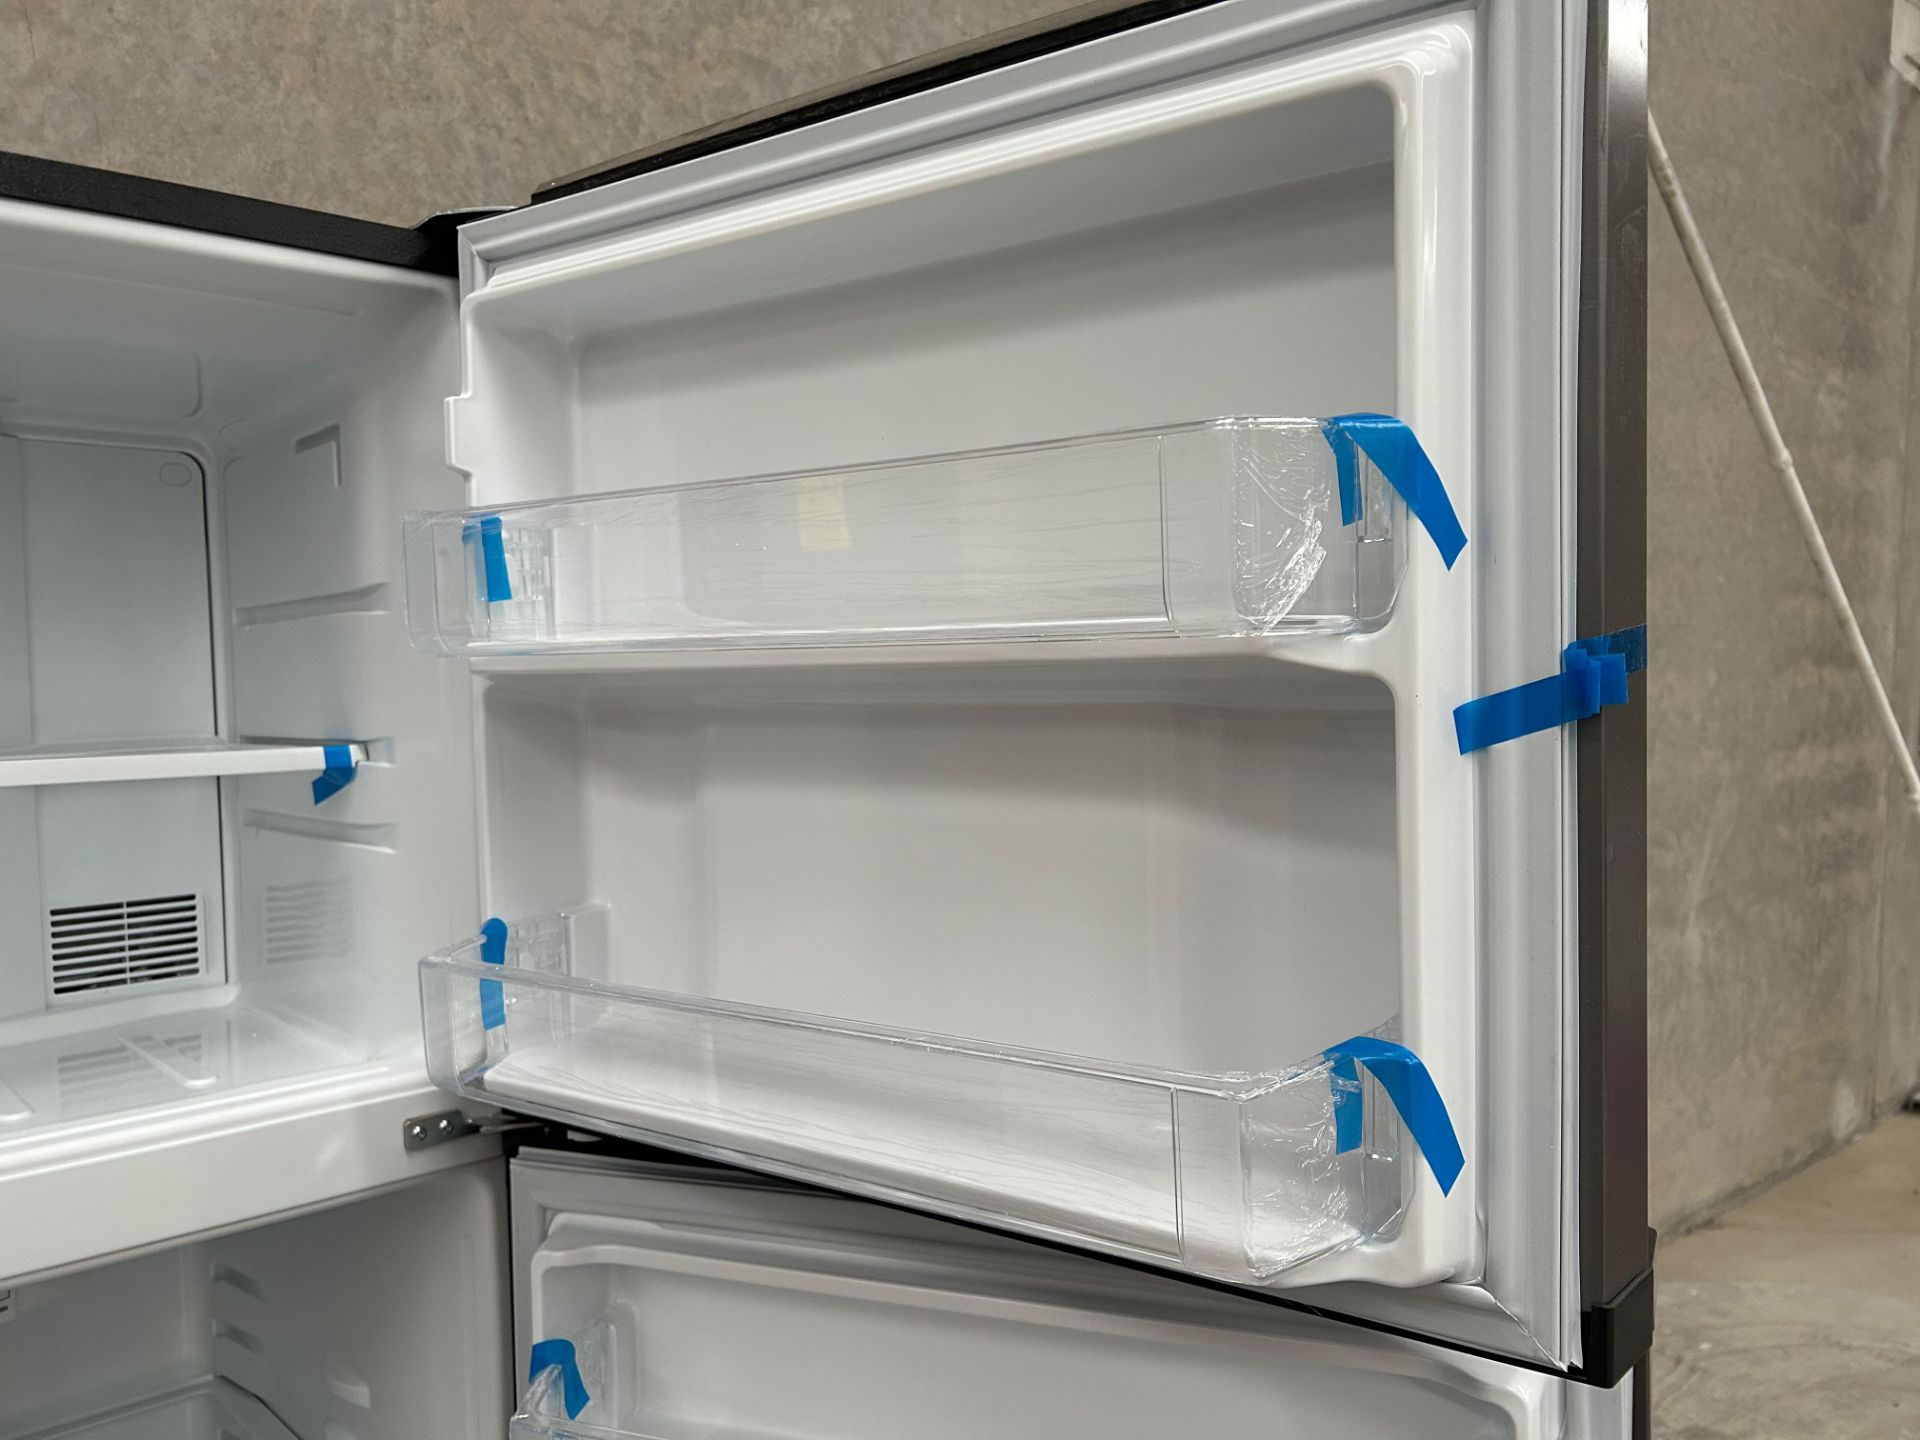 Lote de 2 Refrigeradores contiene: 1 Refrigerador Marca MABE, Modelo RME360PVMRM0, Serie 21969, Col - Image 10 of 15